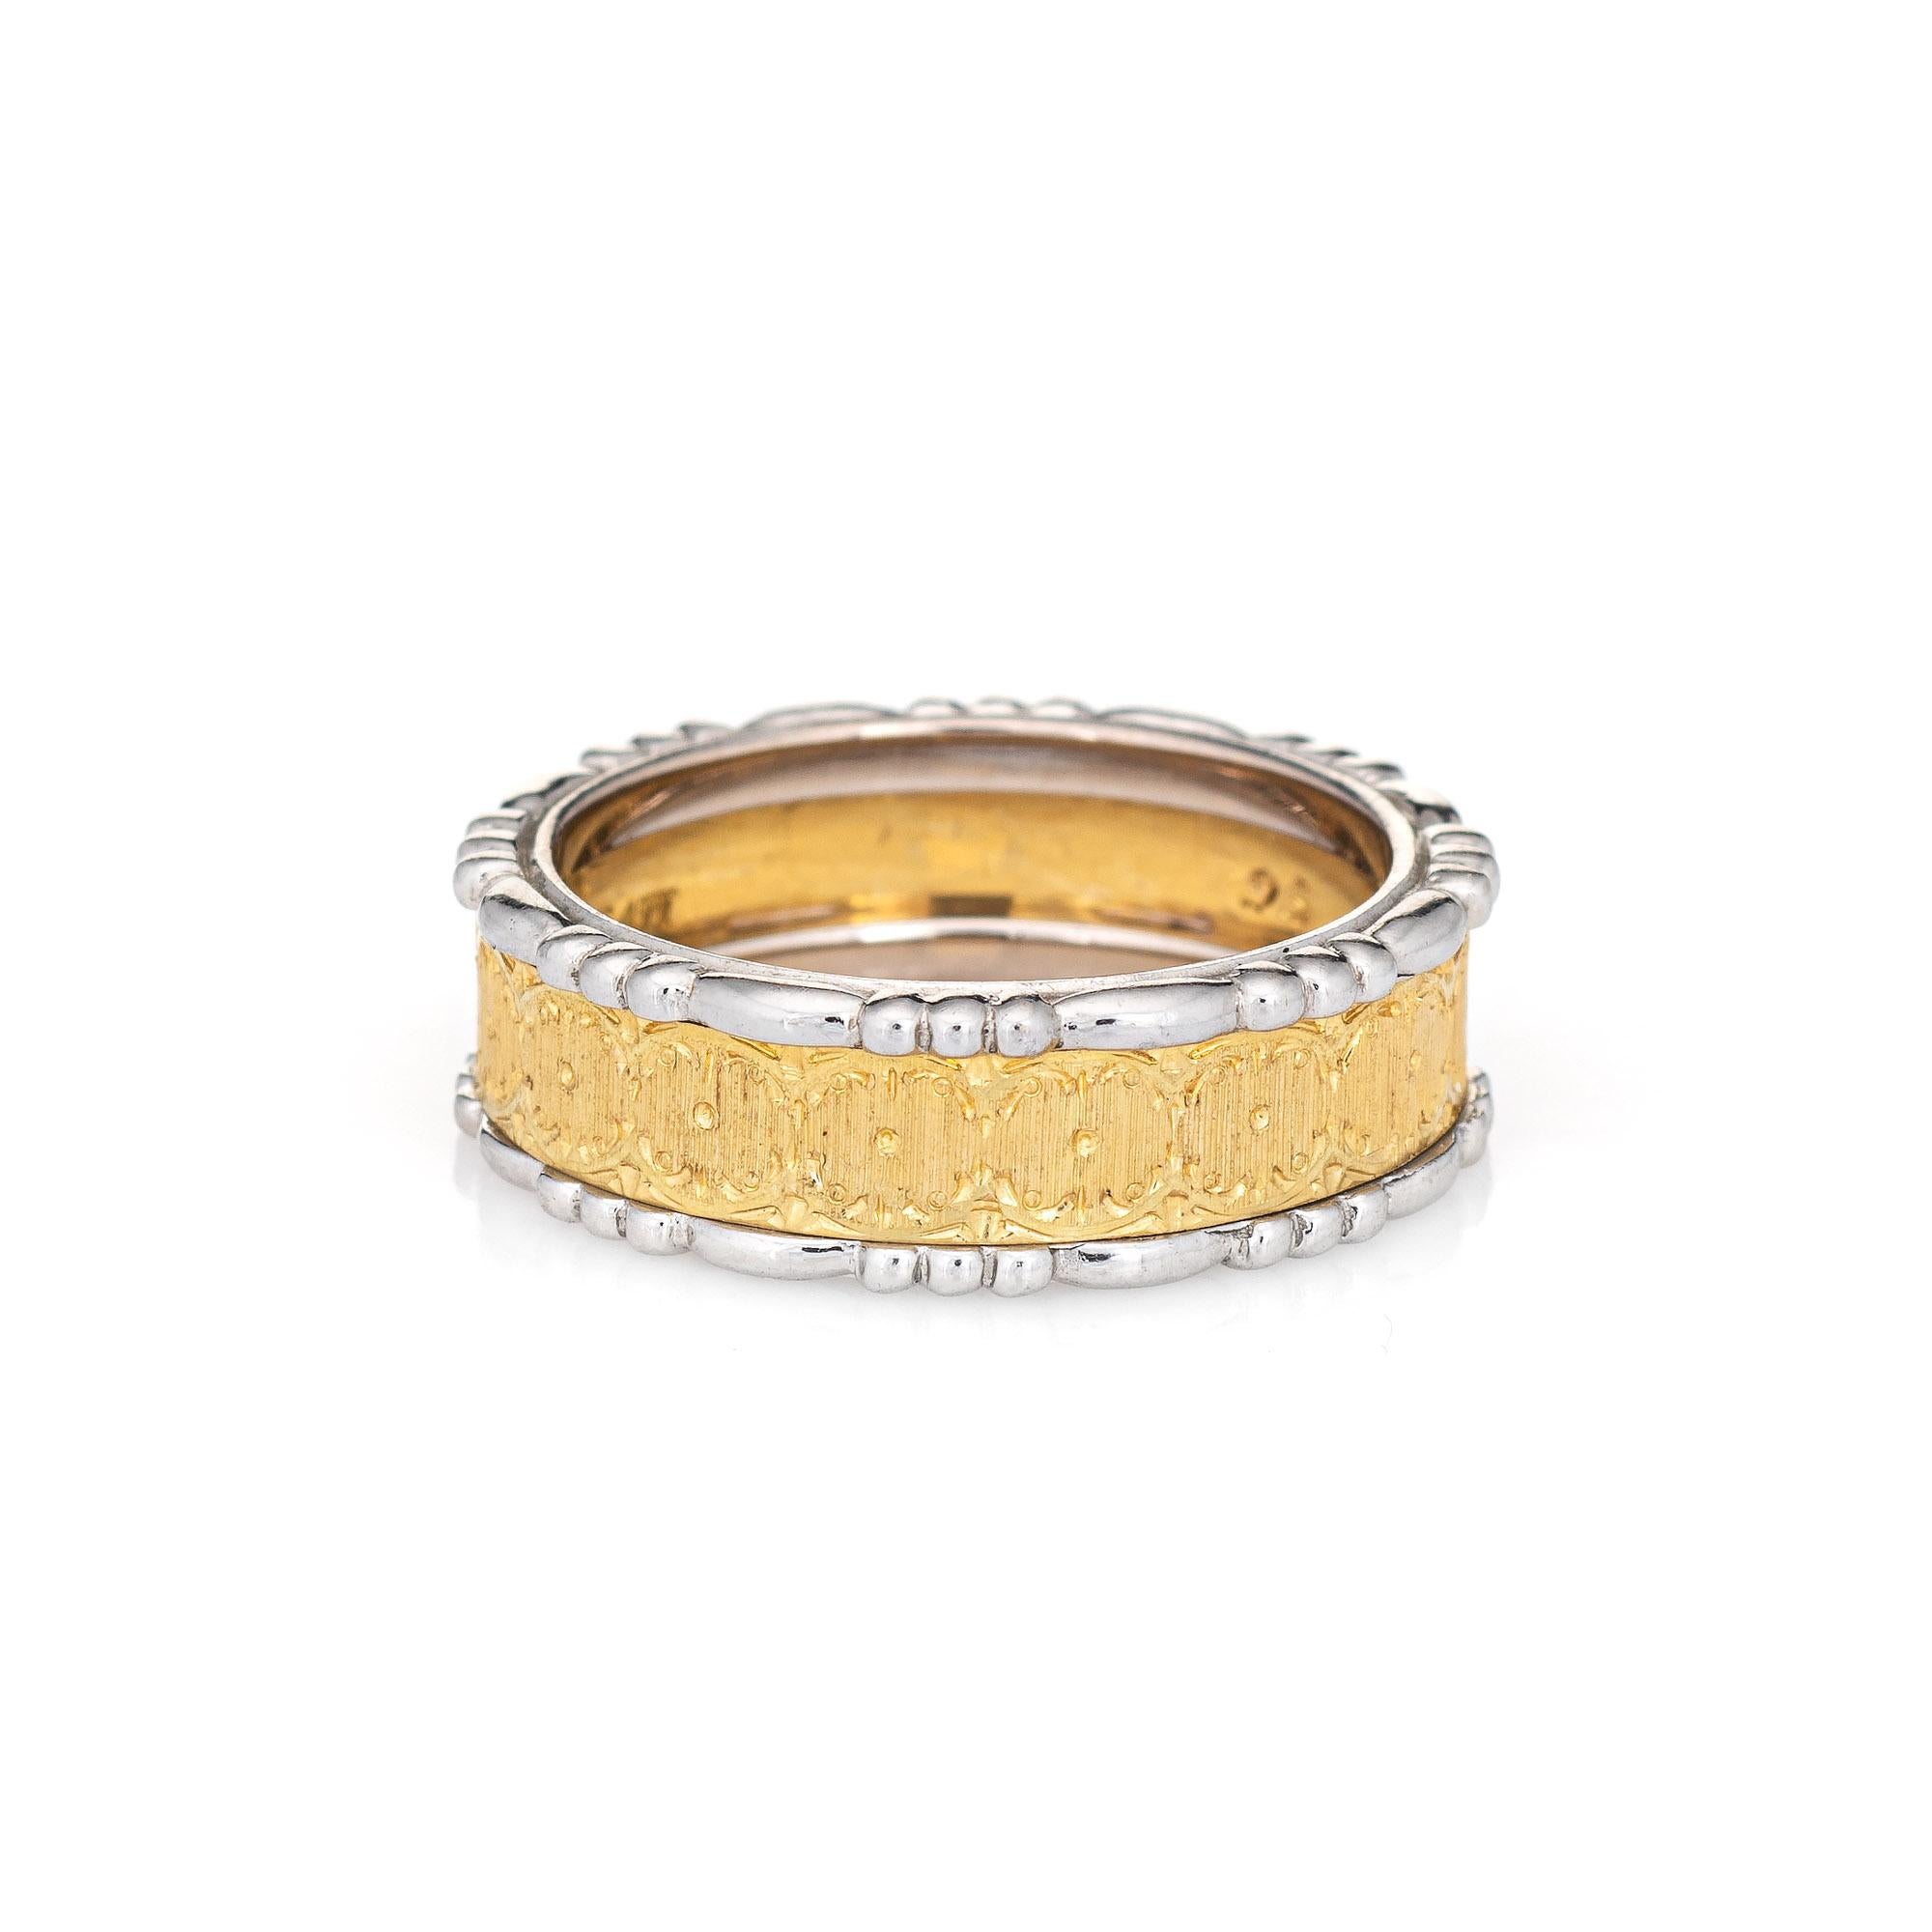 Bracelet texturé Estate Buccellati Prestigio en or jaune et blanc 18 carats.  

Le bracelet présente des détails texturés en or gravés à la main sur la partie en or jaune, une marque distinctive des bijoux Buccellati, avec des détails festonnés en